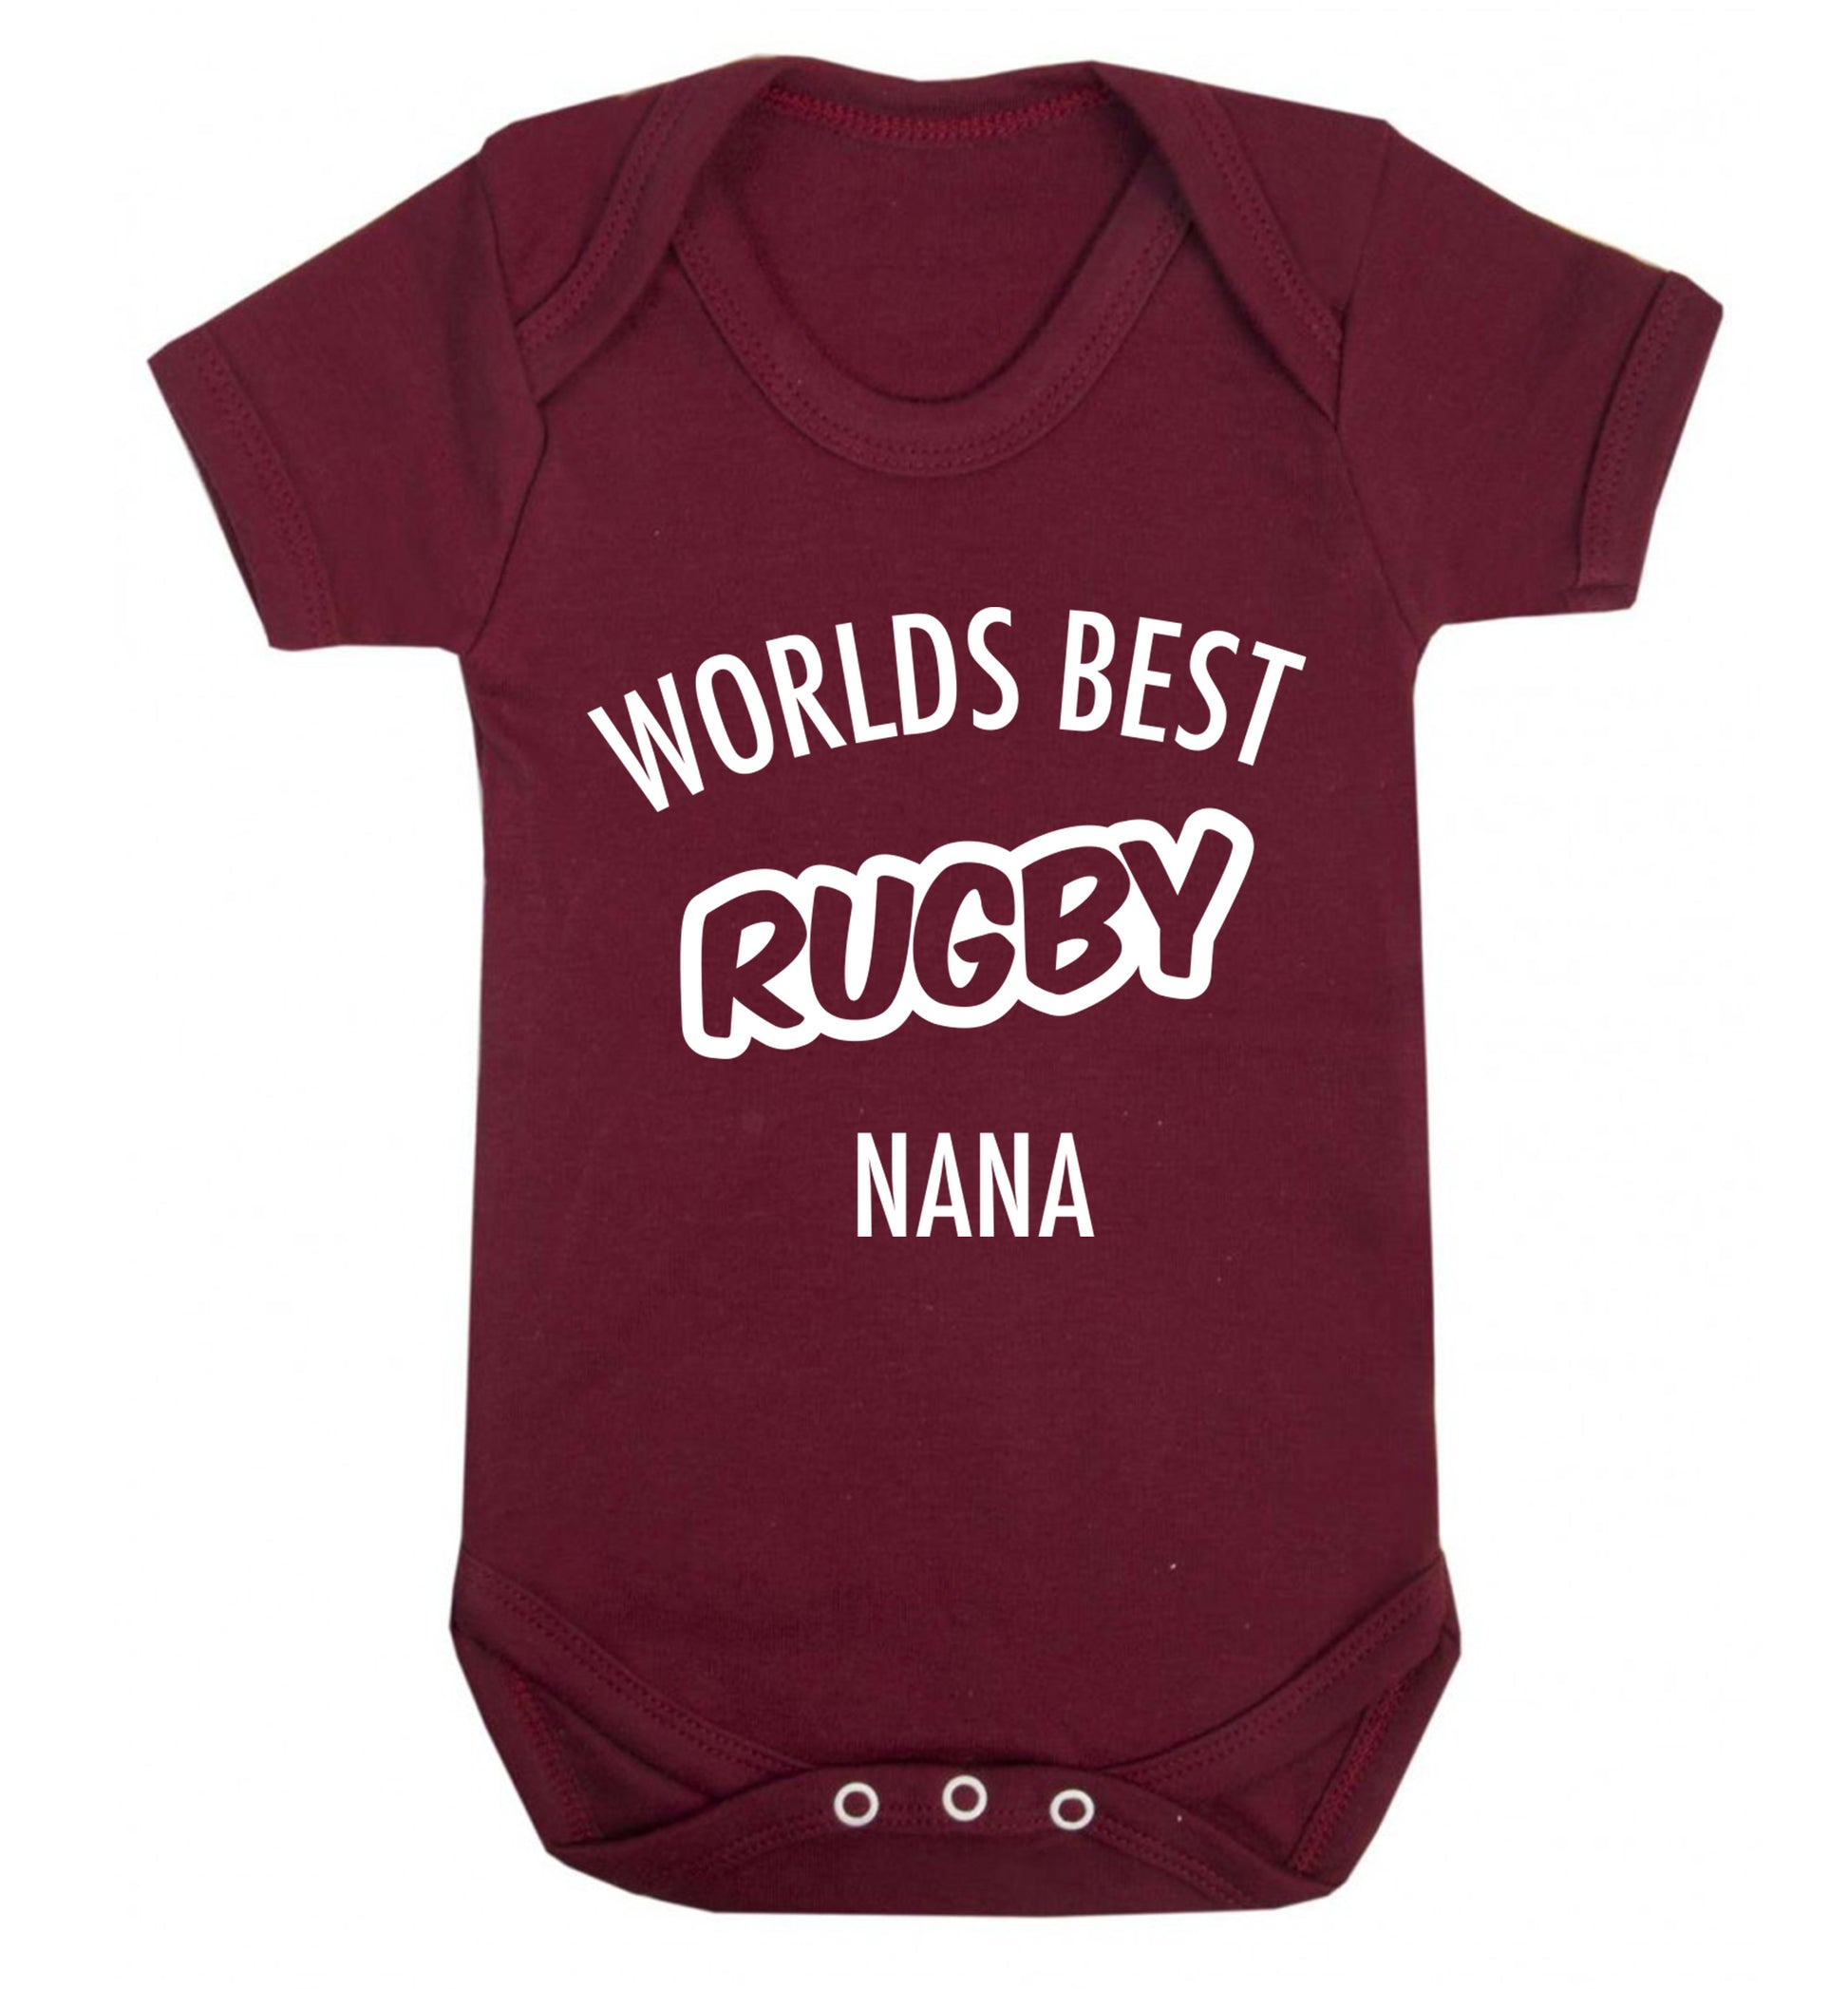 Worlds Best Rugby Grandma Baby Vest maroon 18-24 months